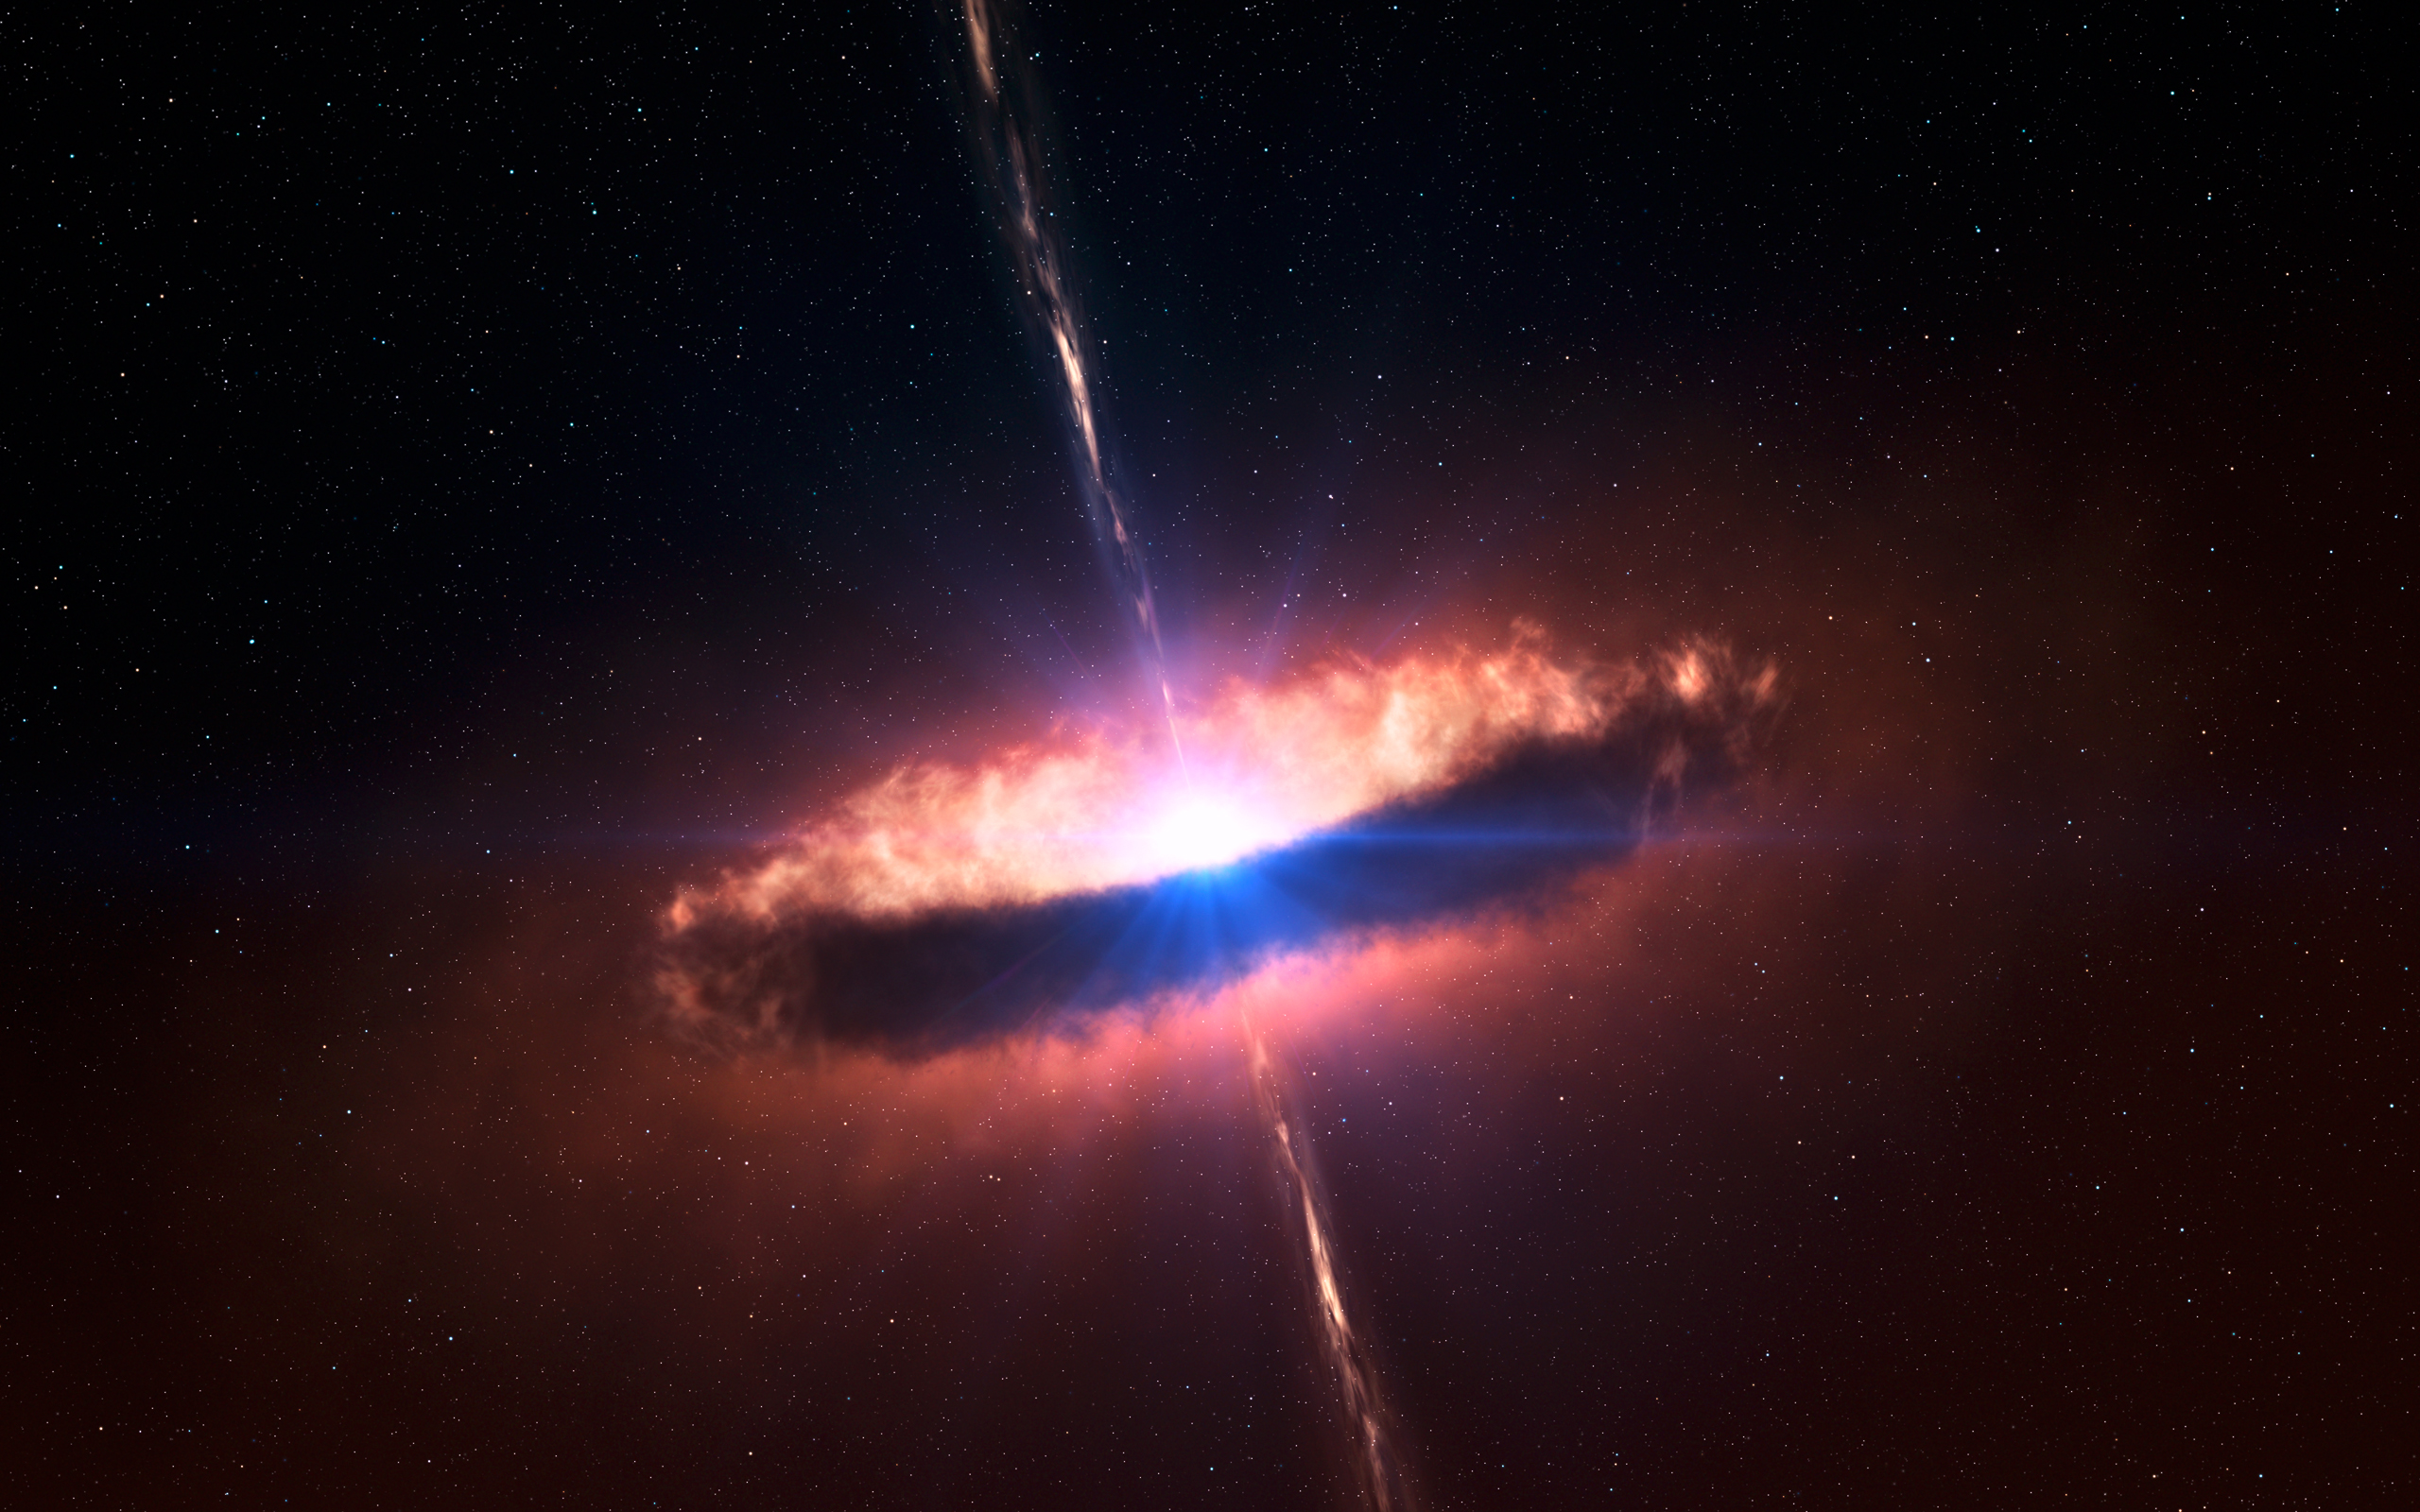 Hình ảnh Black Hole and Star sẽ khiến bạn thực sự choáng ngợp với vẻ đẹp kì diệu của vũ trụ. Những hình ảnh này còn là cơ hội để bạn tìm hiểu thêm về các hành tinh và thiên thể trong không gian bao la.